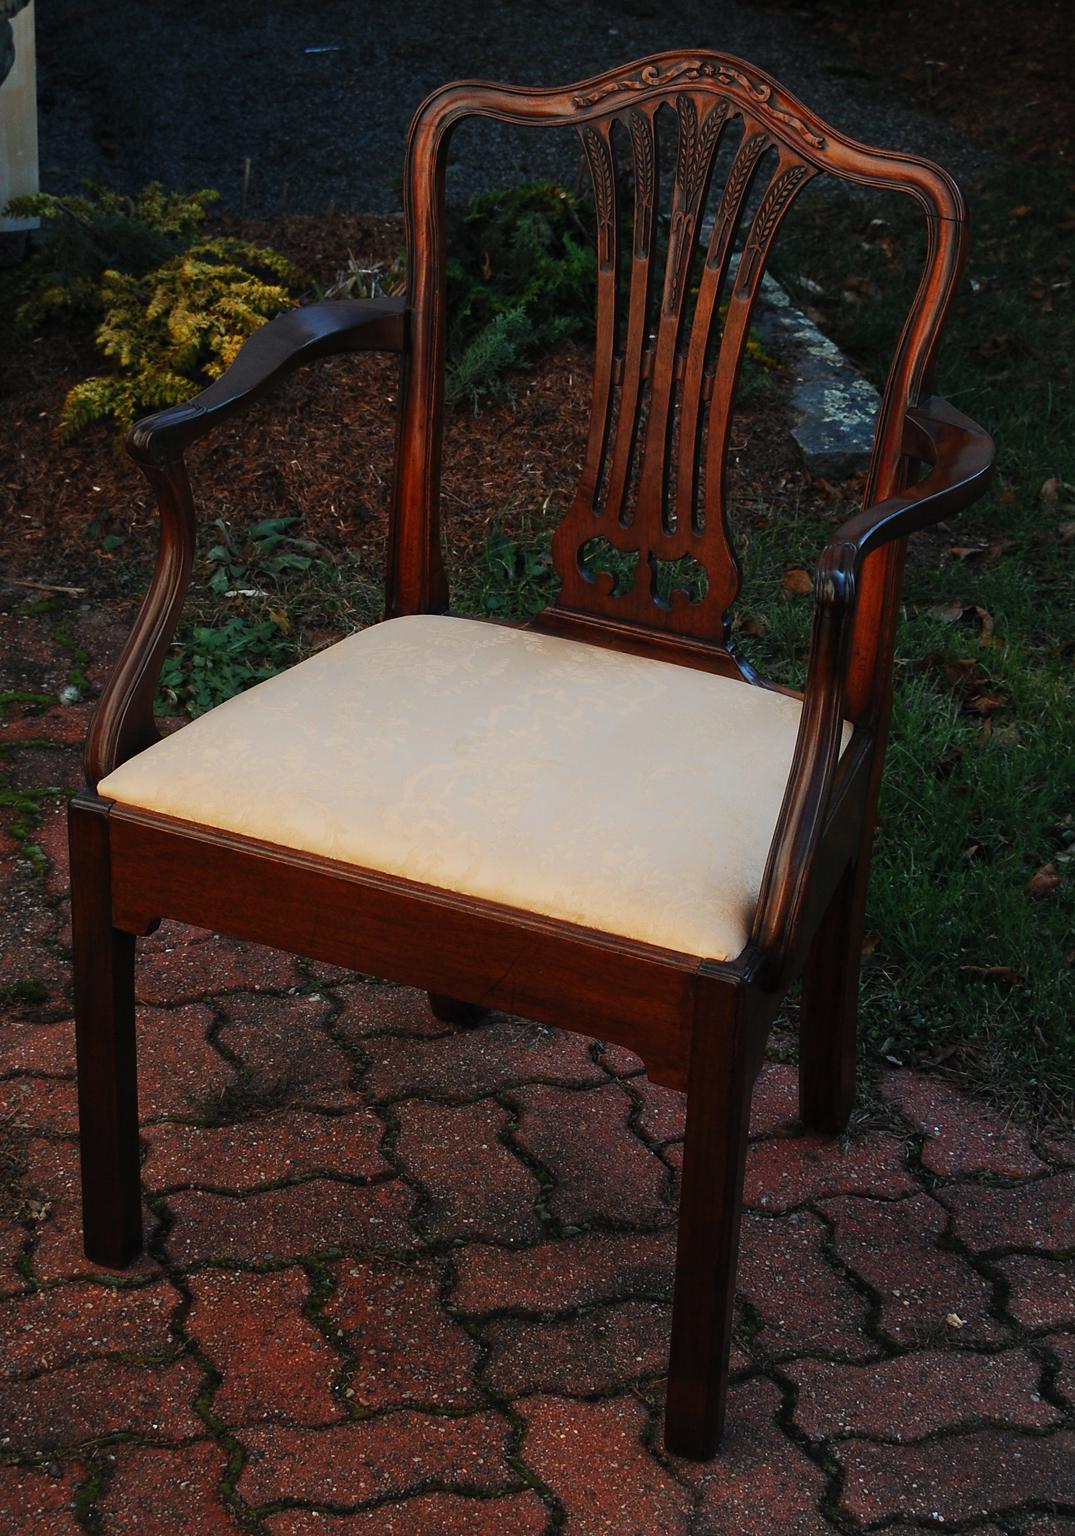 Ref. #4556. Englischer georgianischer Hepplewhite-Sessel aus Mahagoni mit kühnen Proportionen, mit Weizenblatt- und Bandschnitzereien an der Rückenlehne und Schnitzereien an den zierlichen Armlehnen.  Die gewölbte obere Schiene und die breite,